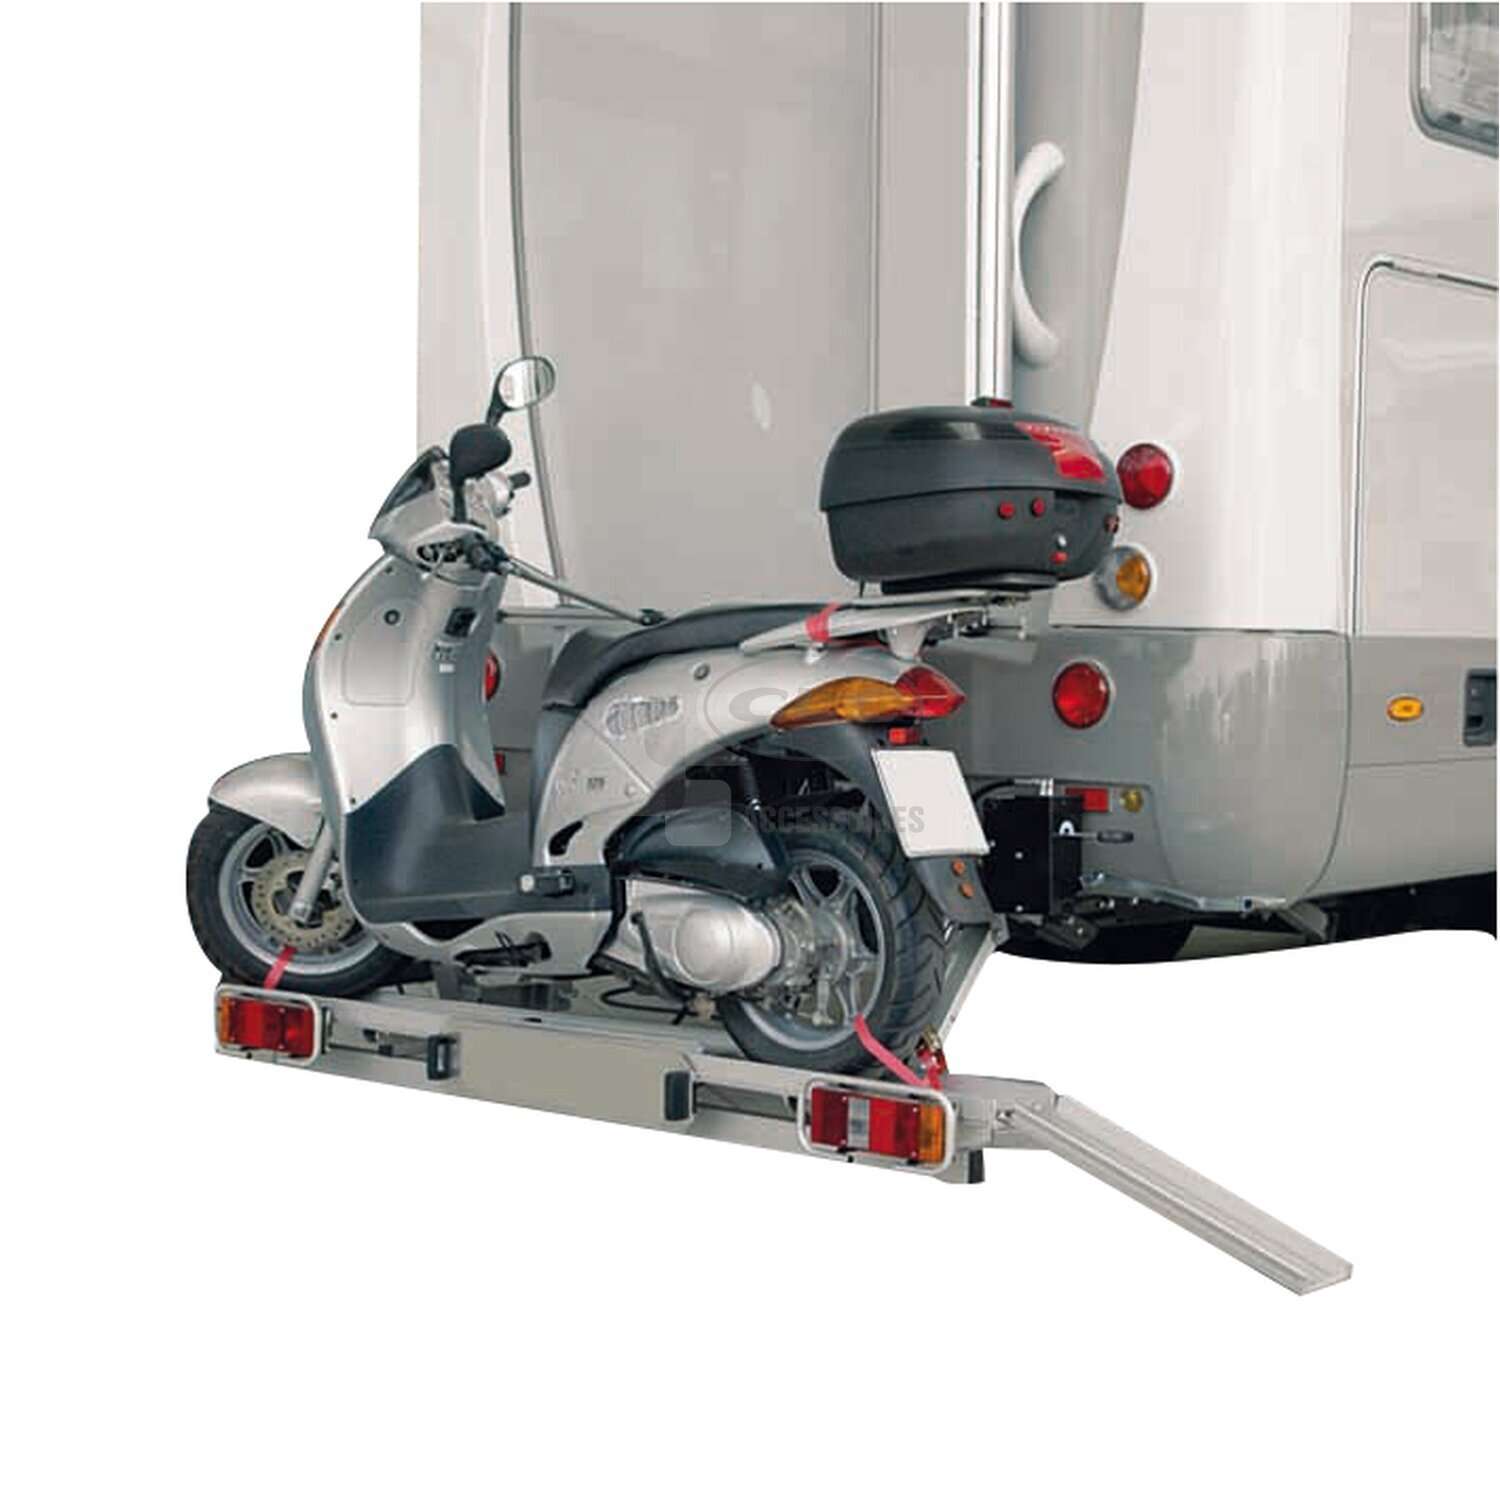 Porte moto attelage - Équipement caravaning